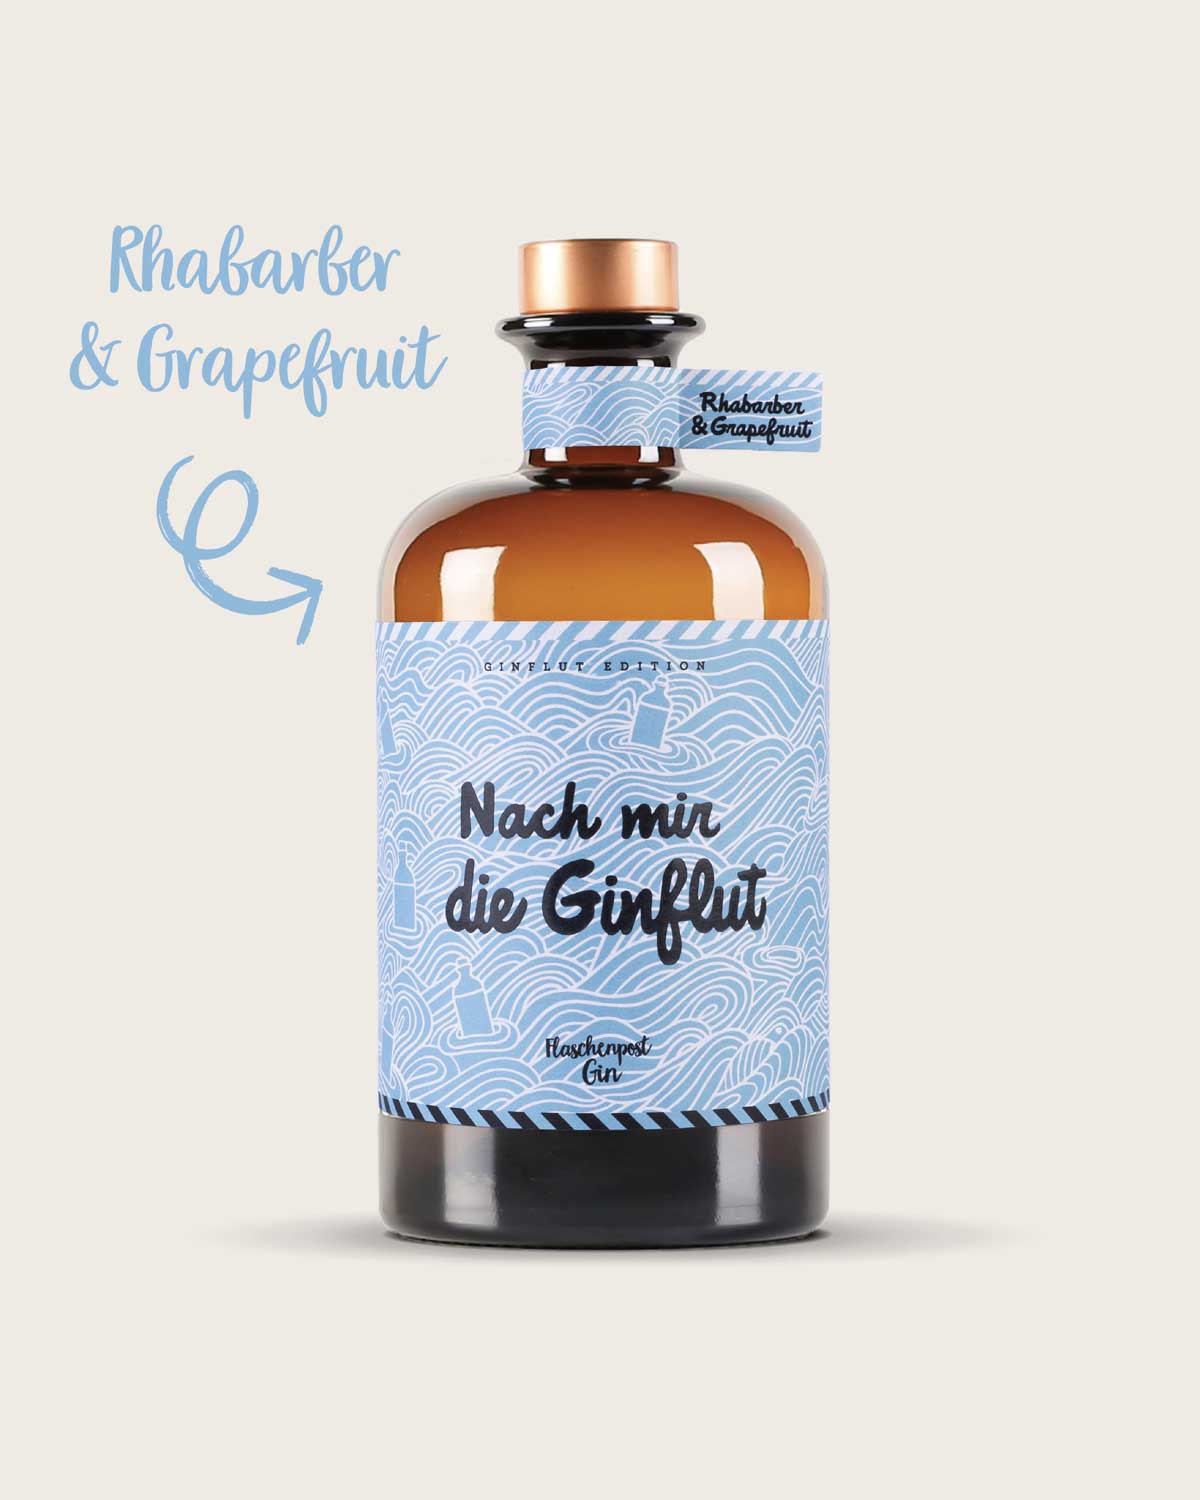 Erfrischende Rhabarber und Grapefruitnote in der neuen Flaschenpost Gin Special Edition “Nach mir die Ginflut” 